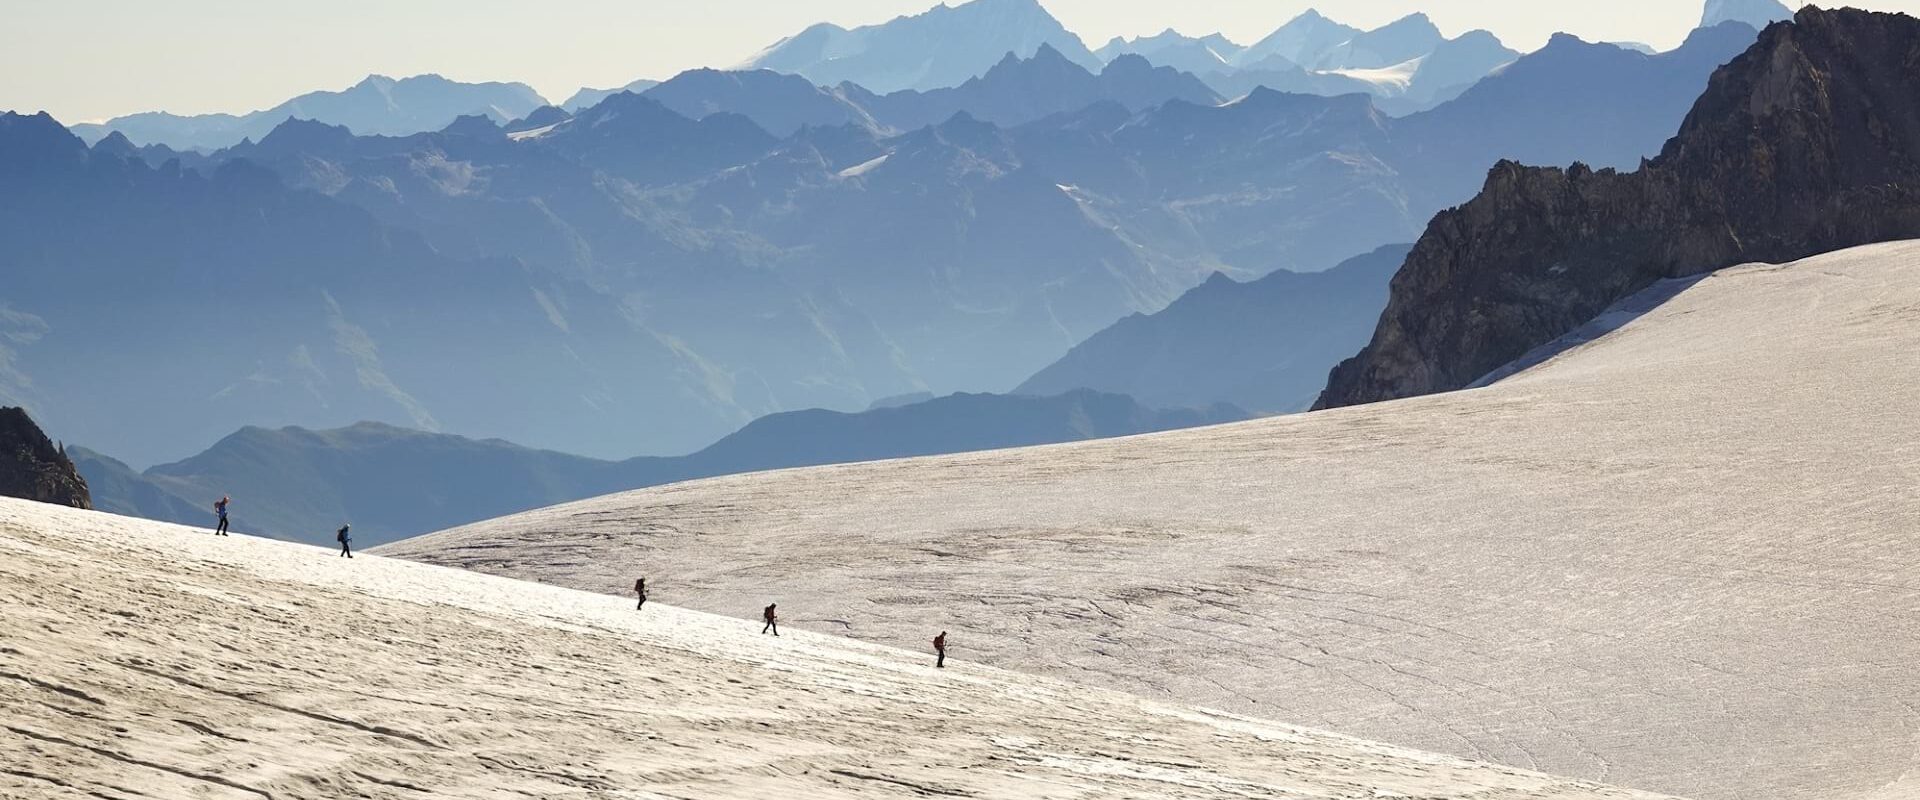 Live Q&A About The Chamonix-Zermatt Haute Route